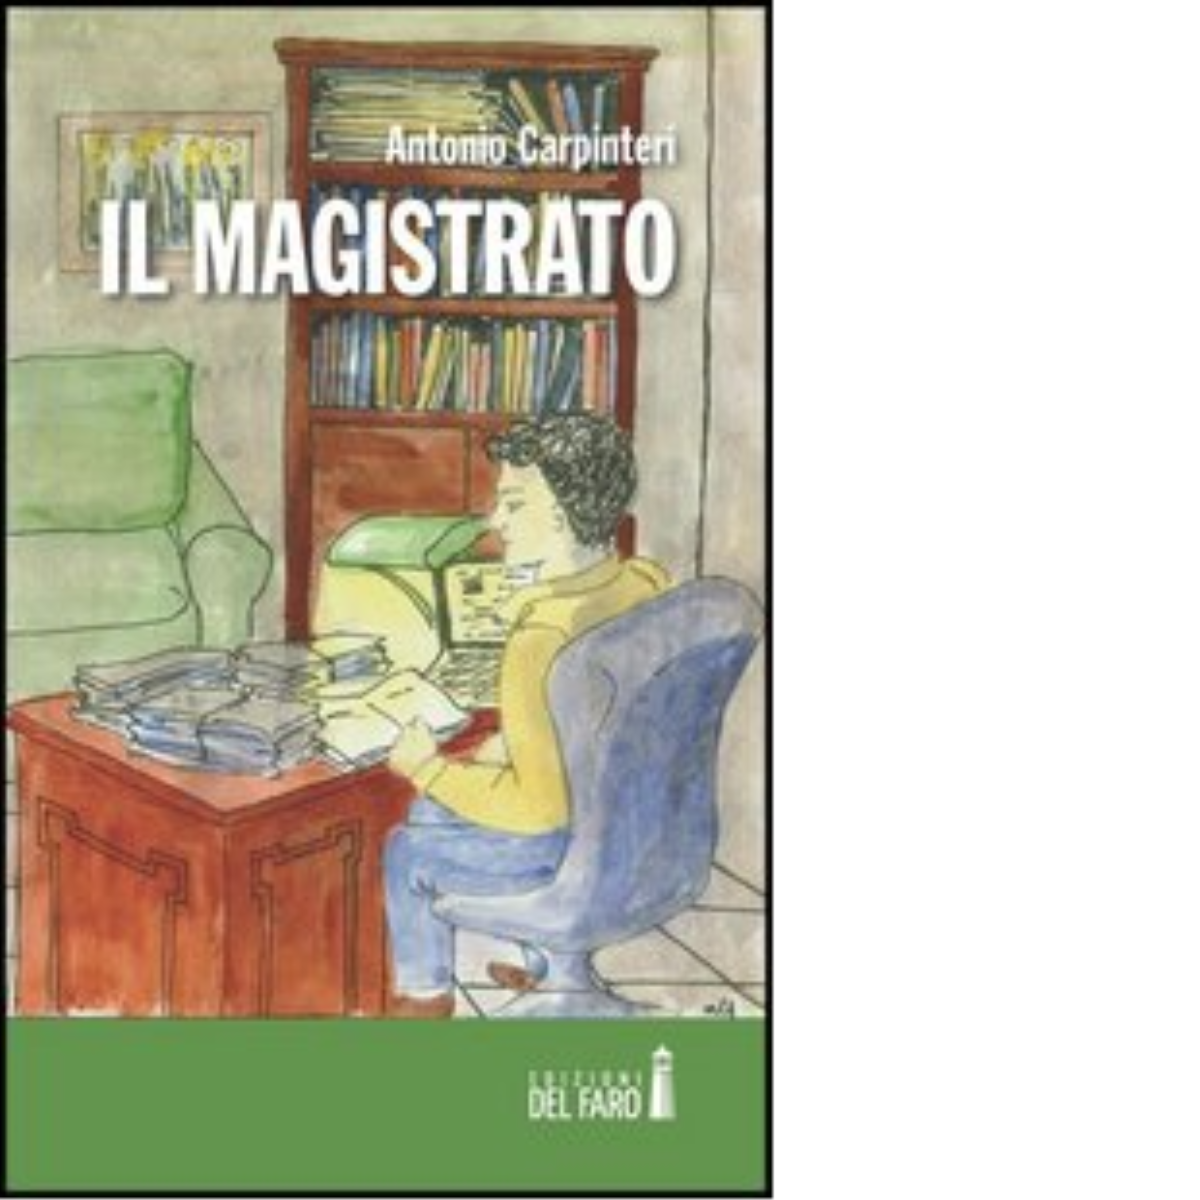 Il magistrato di Carpinteri Antonio - Edizioni Del faro, 2013